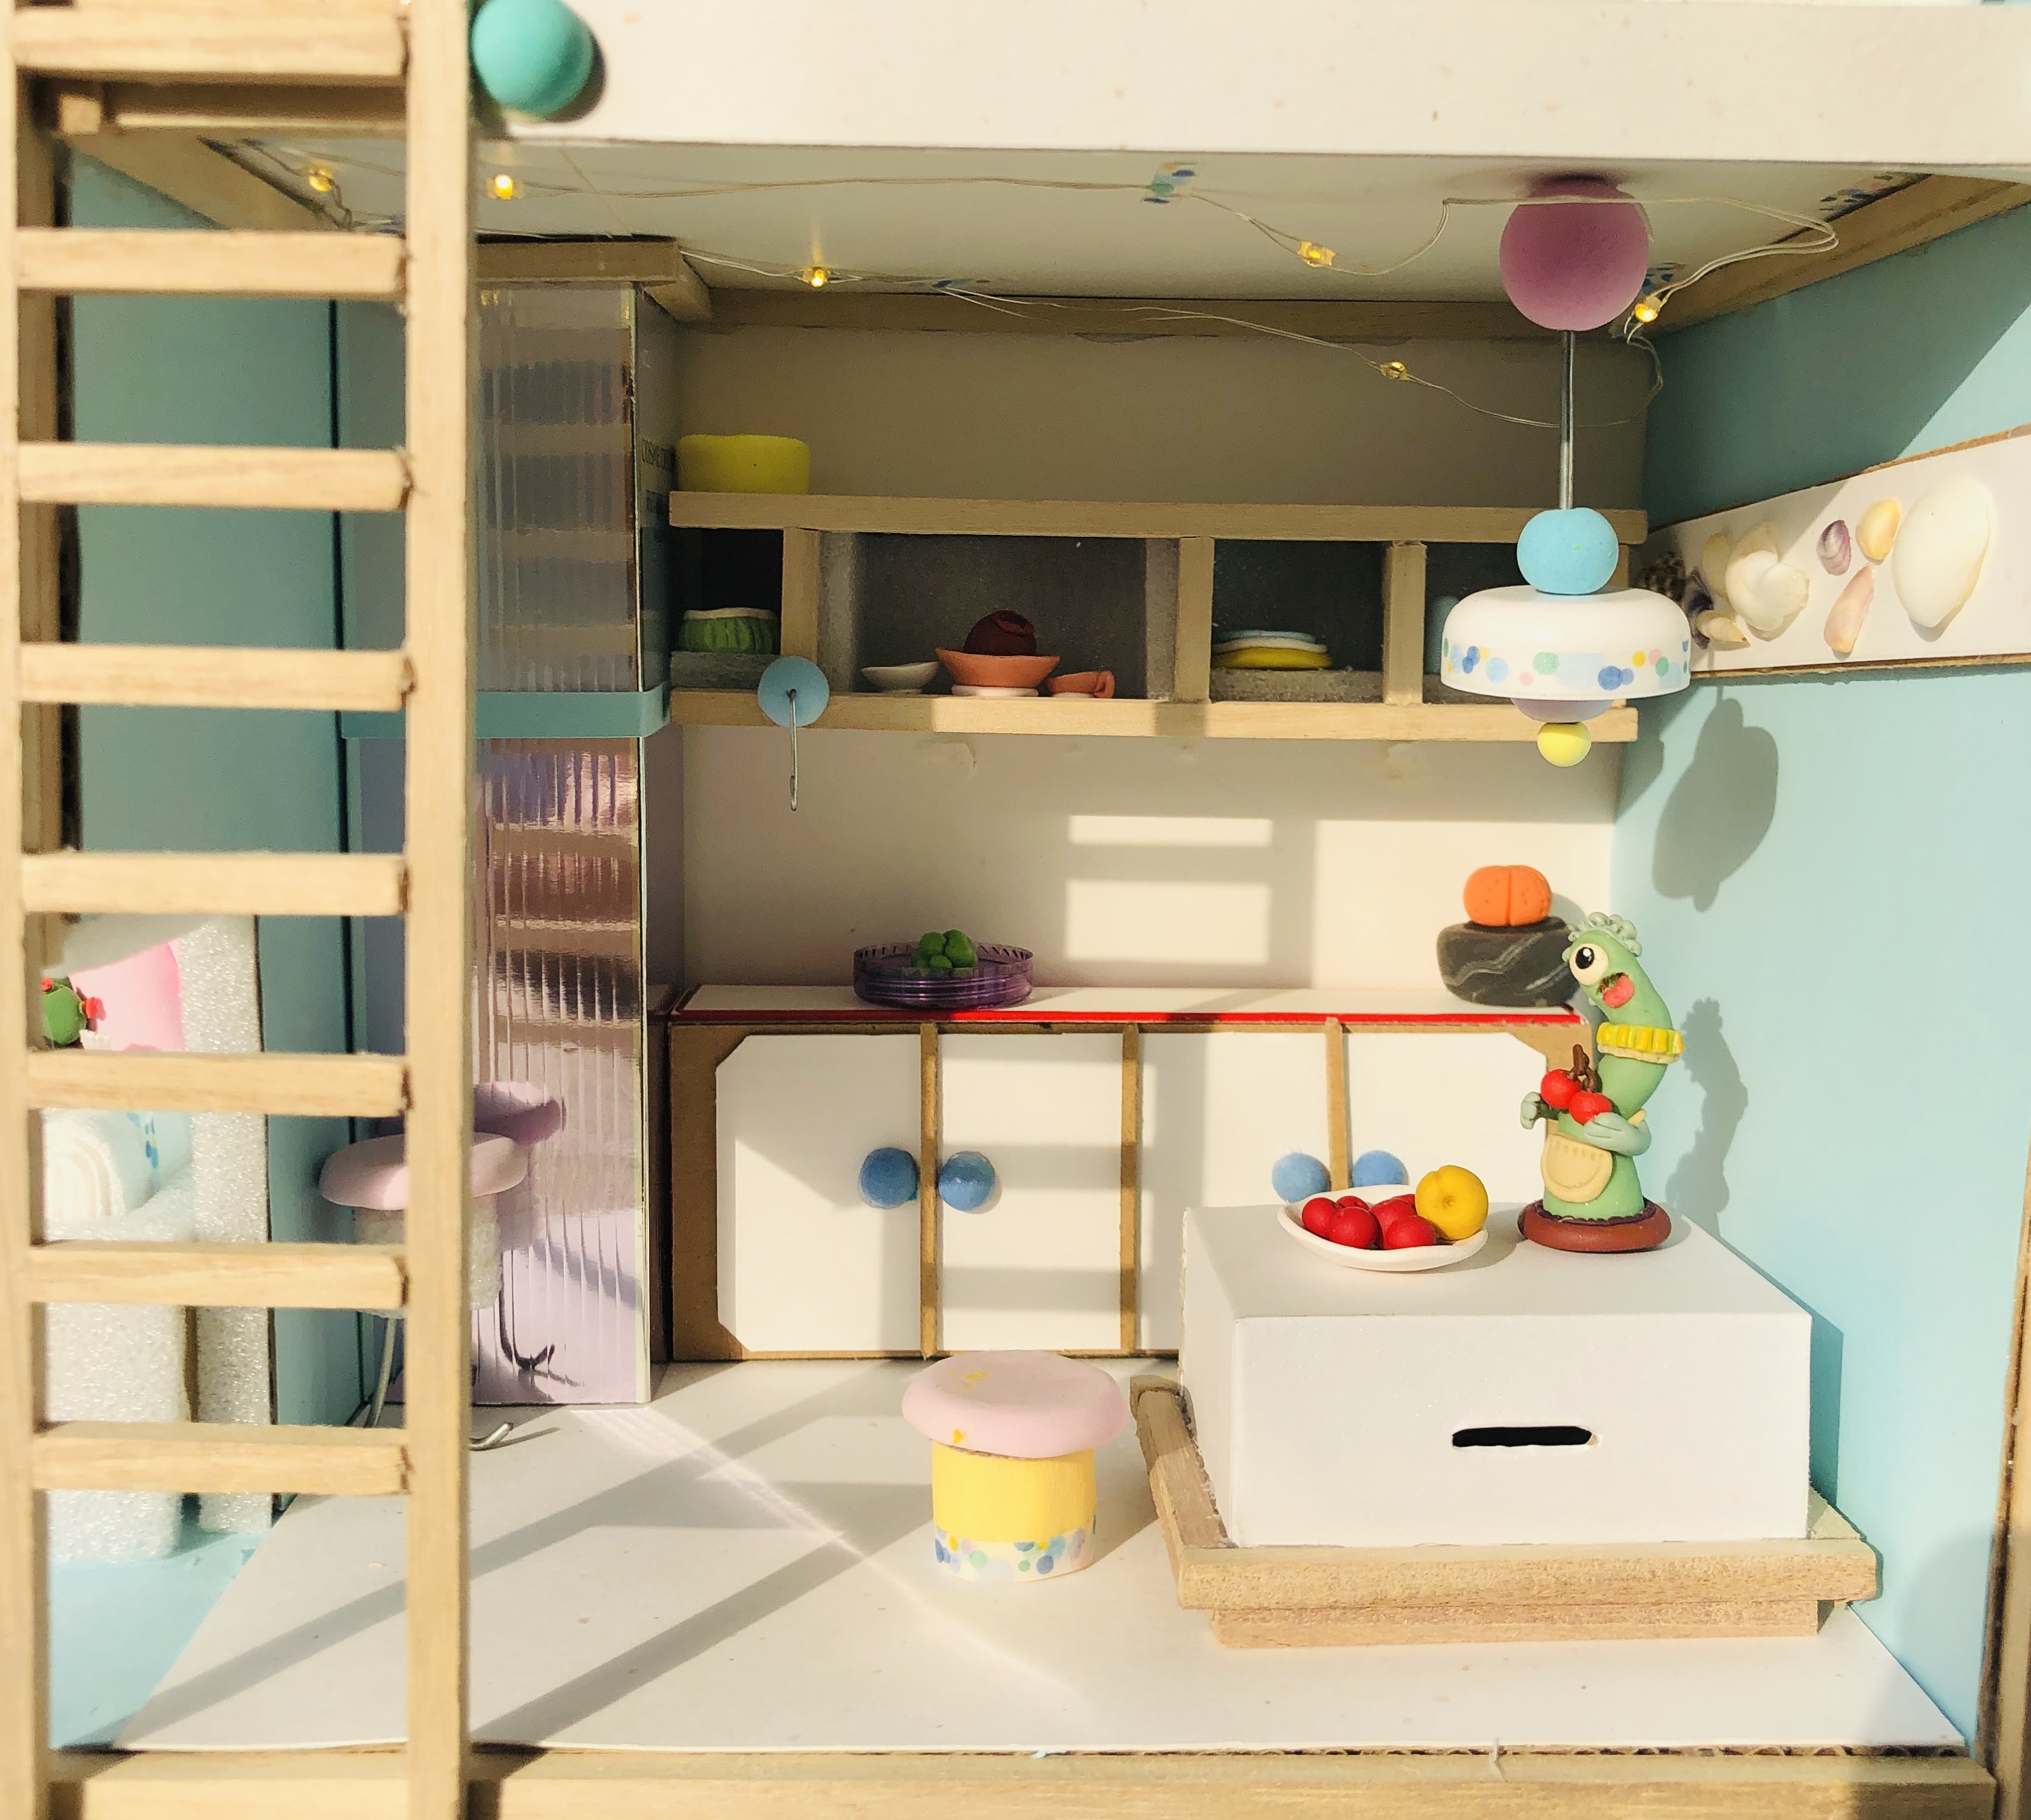 幼儿园娃娃家小房子 儿童过家家玩具屋 塑料游戏屋 室内仿真玩具-阿里巴巴